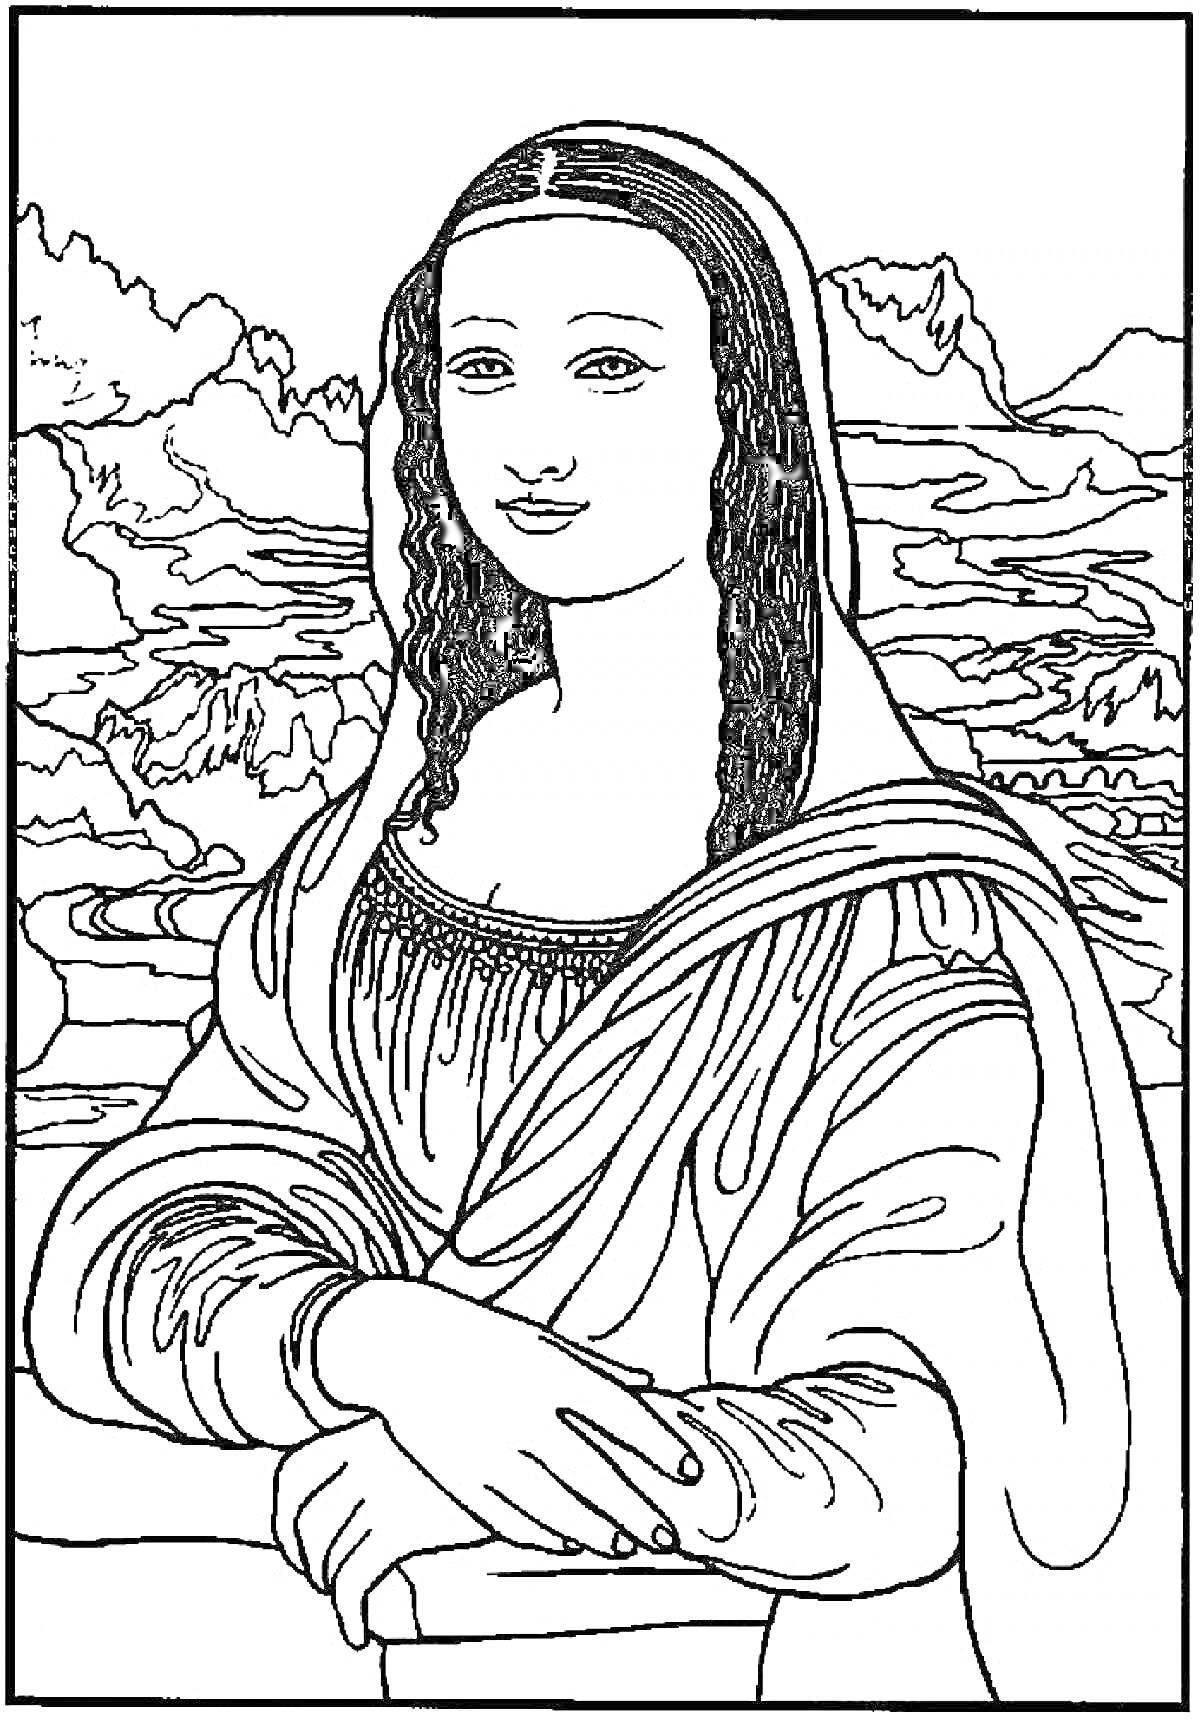 Женский портрет перед ландшафтным фоном с горным пейзажем